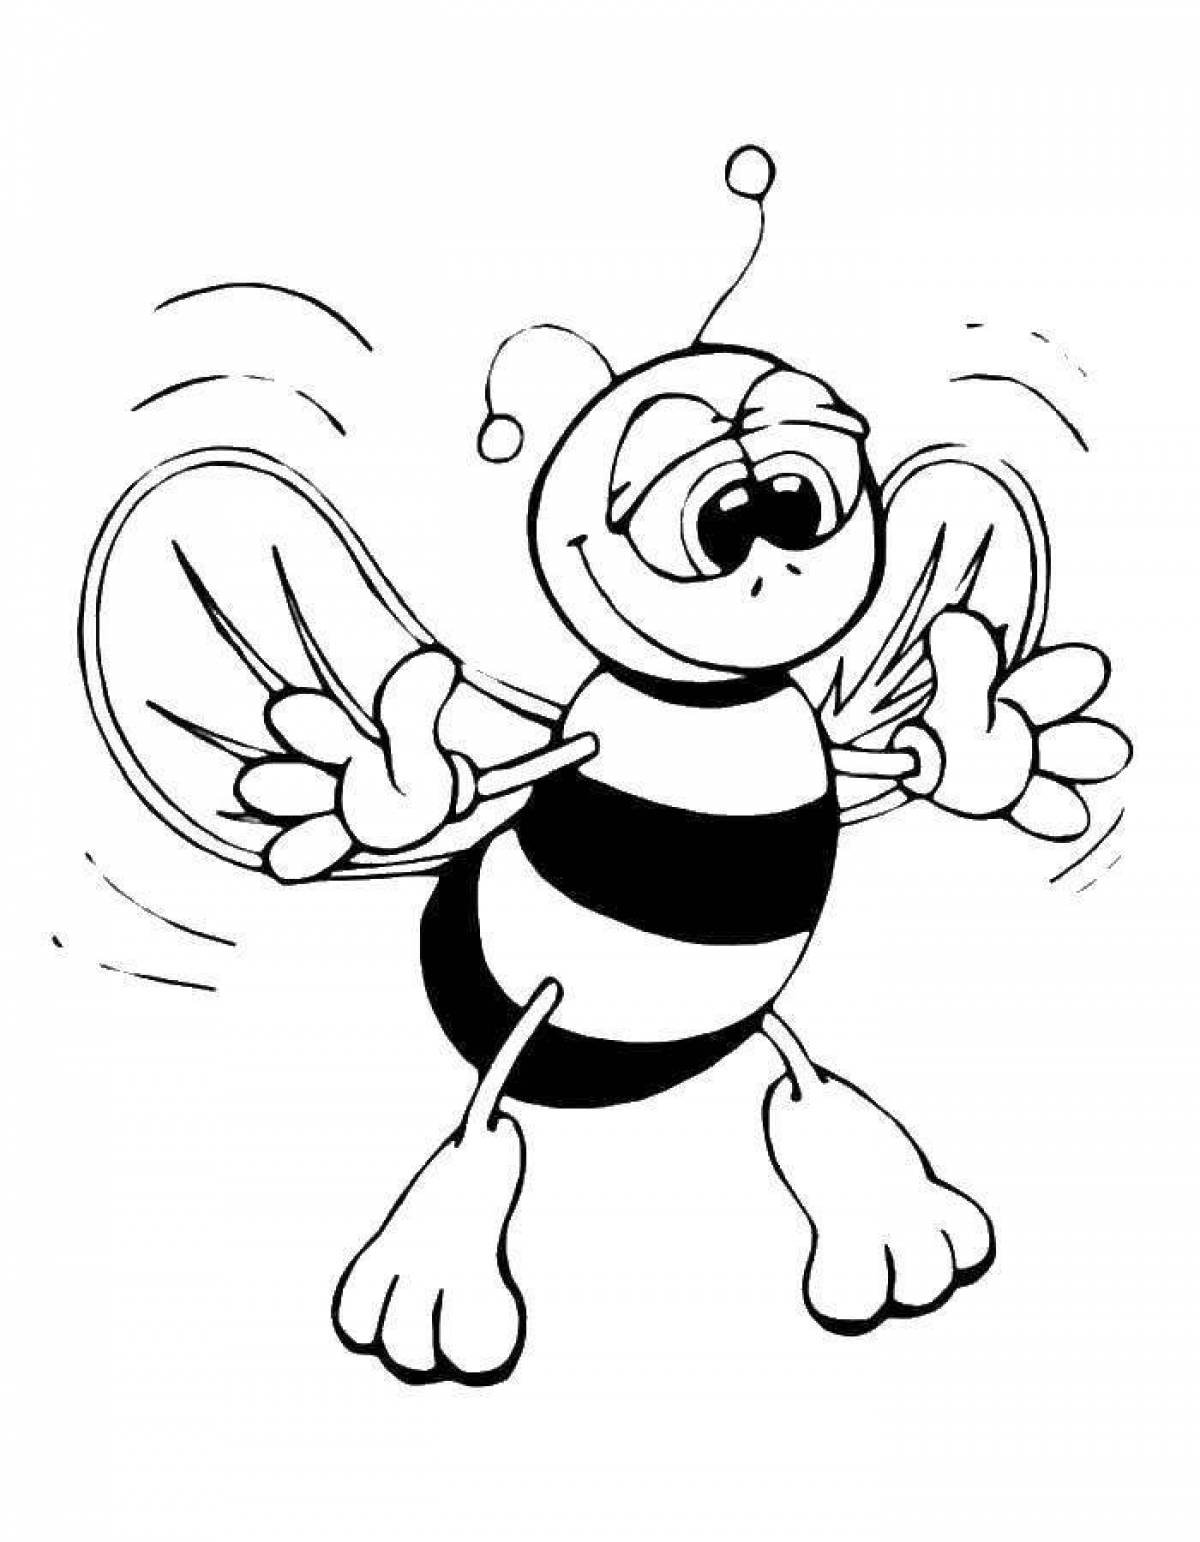 Пчелка раскраска распечатать. Пчела раскраска. Раскраска пчёлка для детей. Пчела раскраска для детей. Пчелка раскраска для малышей.